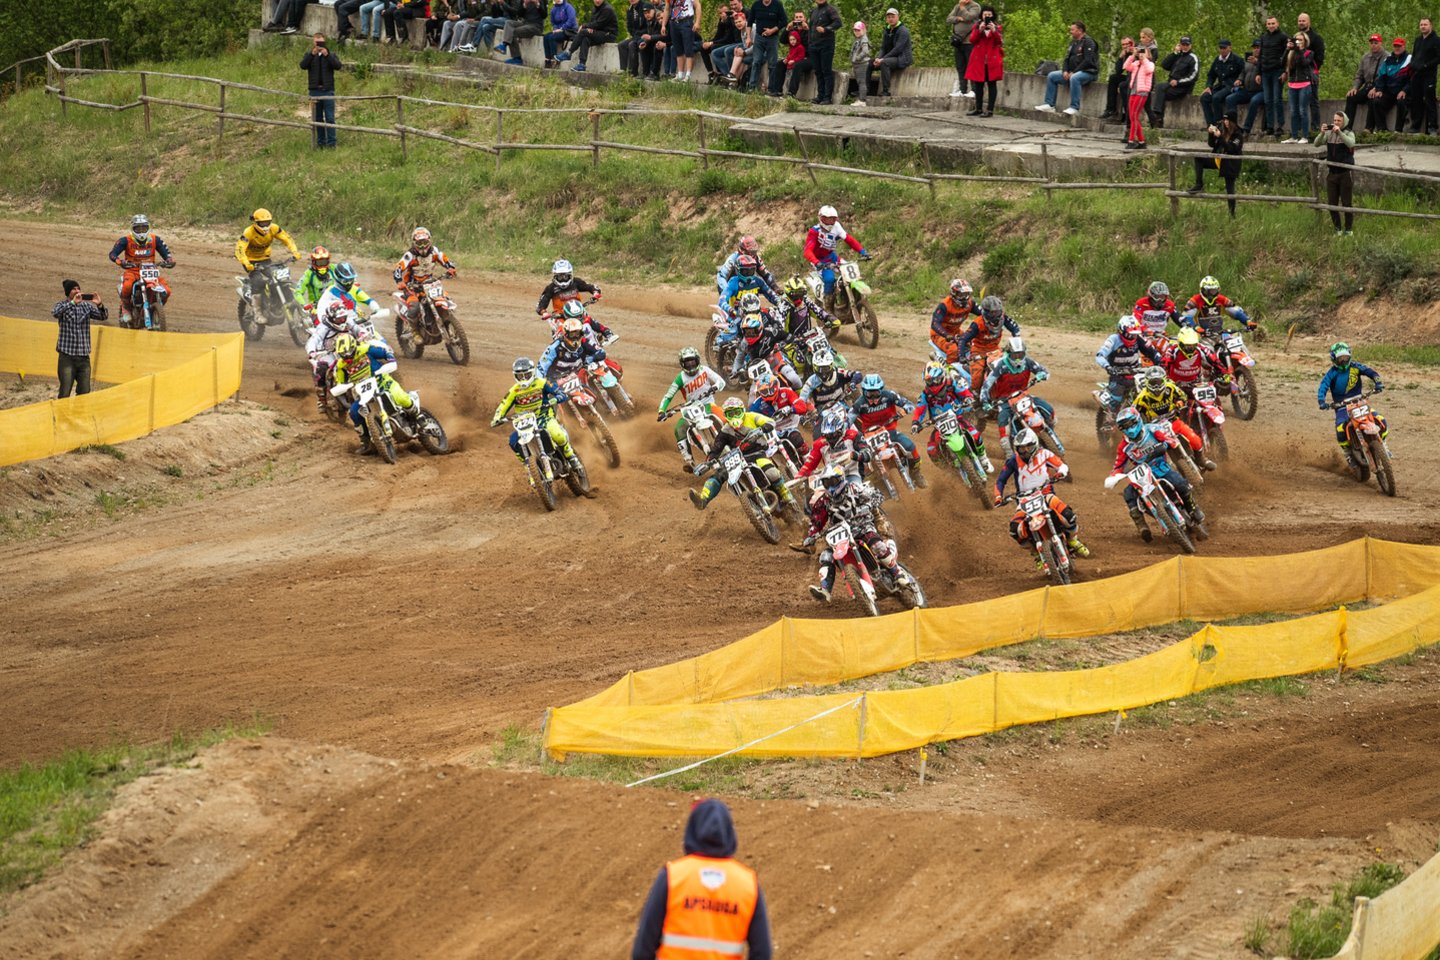 2019 m. motociklų kroso sezonas buvo atidarytas Pakruojo rajono Petrašiūnų trasoje – čia susigrūmė per du šimtus sportininkų iš Lietuvos bei aplinkinių valstybių. 